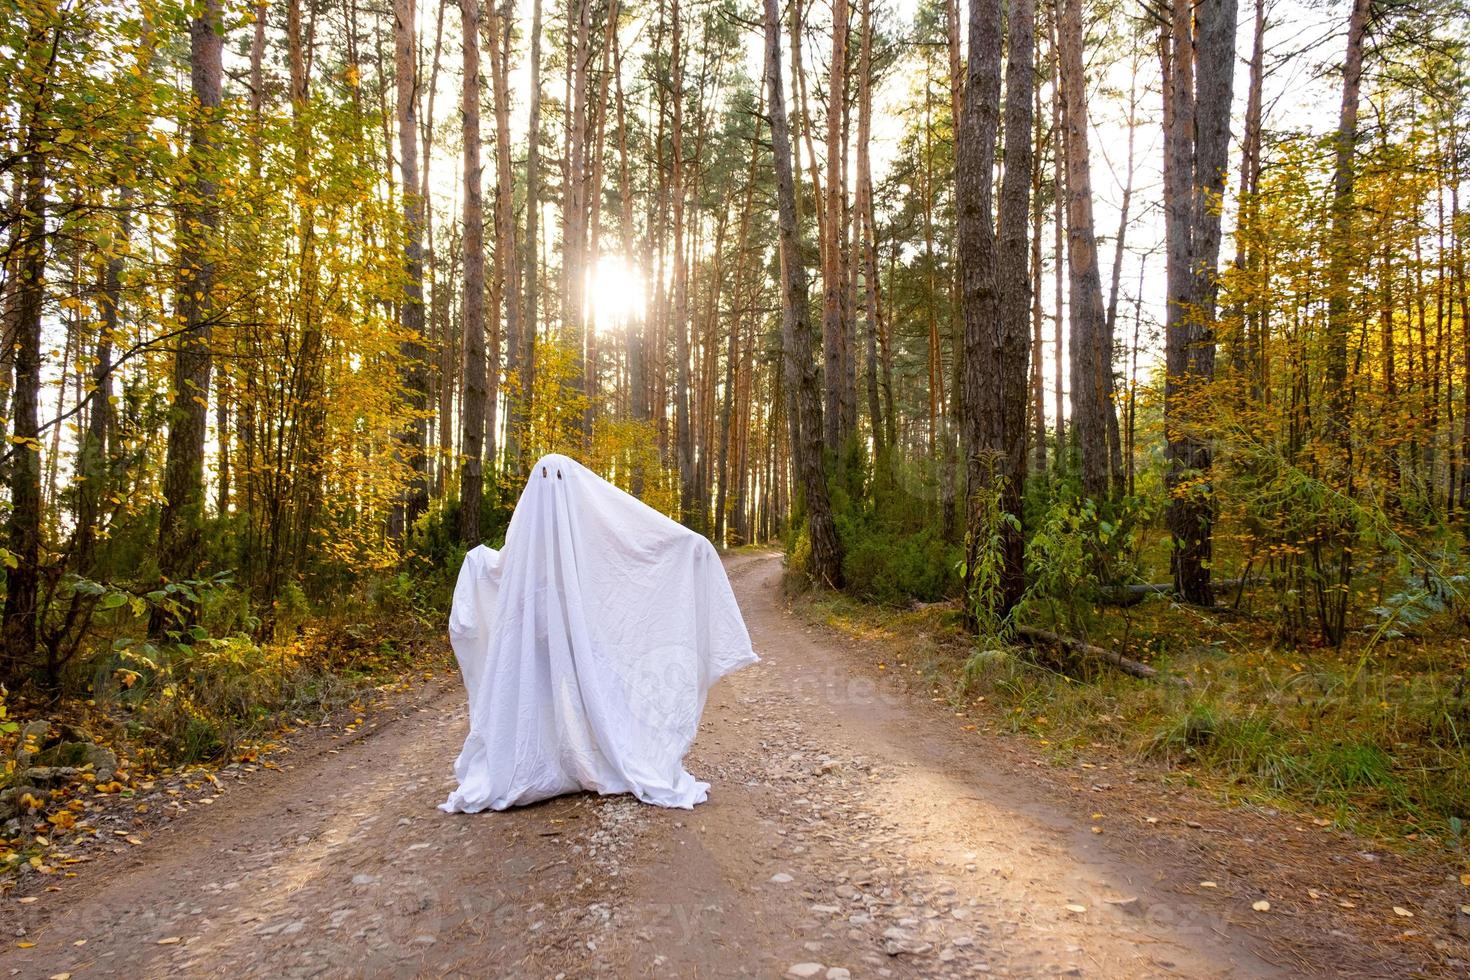 Ein Kind in Laken mit Augenausschnitt wie ein Geisterkostüm in einem Herbstwald erschreckt und erschreckt. ein nettes kleines lustiges Gespenst. Halloween Party foto